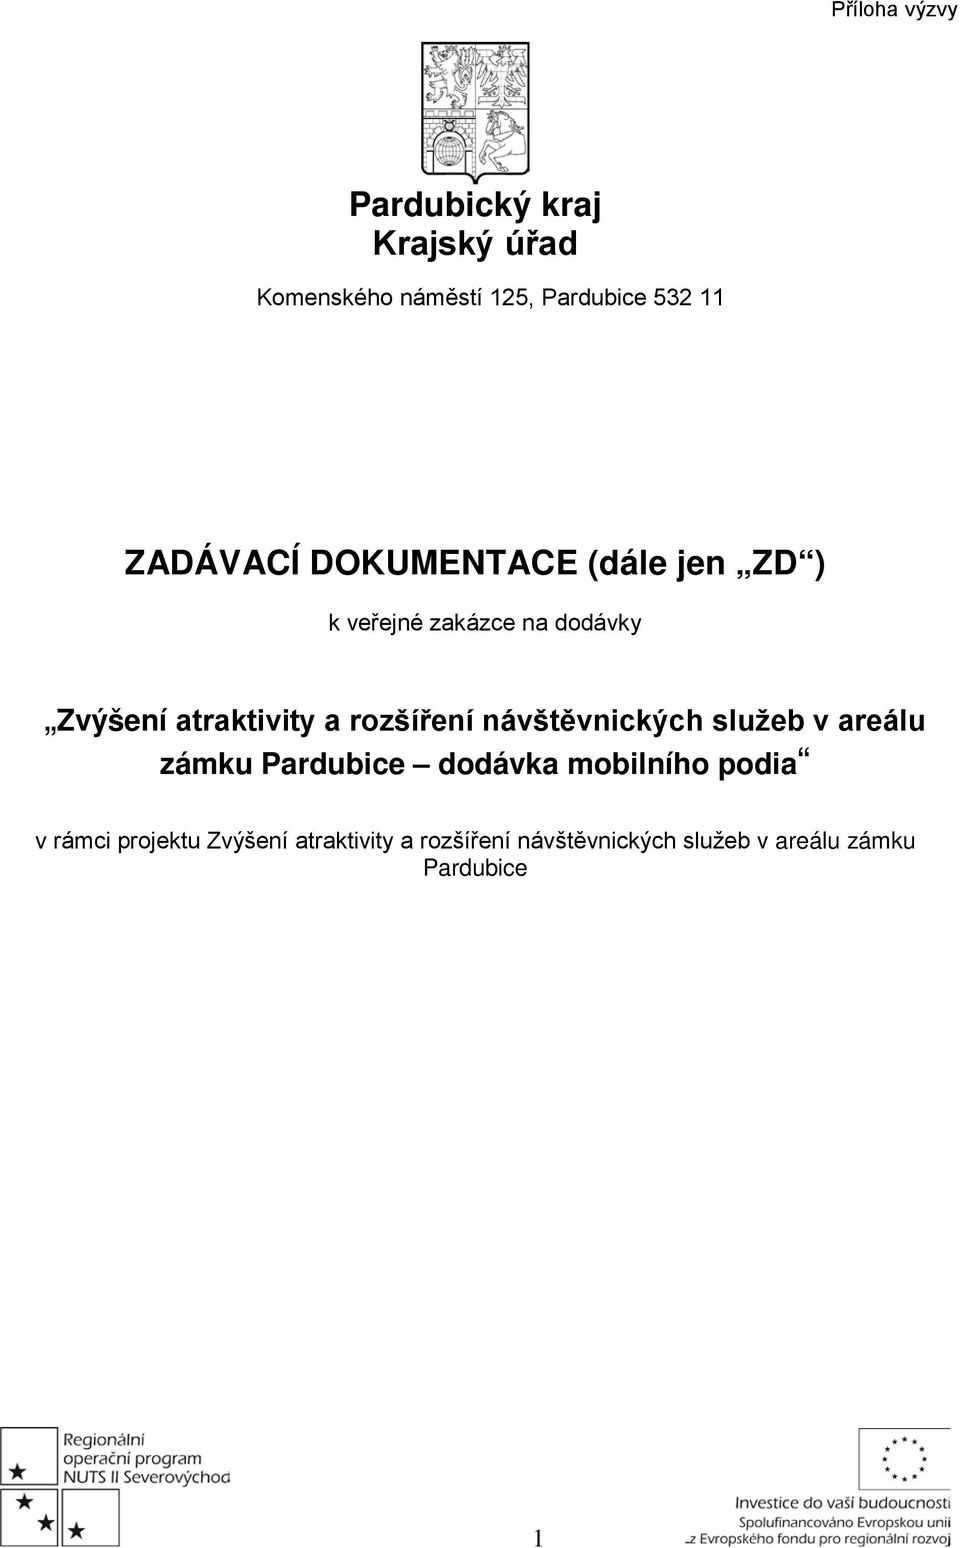 rozšíření návštěvnických služeb v areálu zámku Pardubice dodávka mobilního podia v